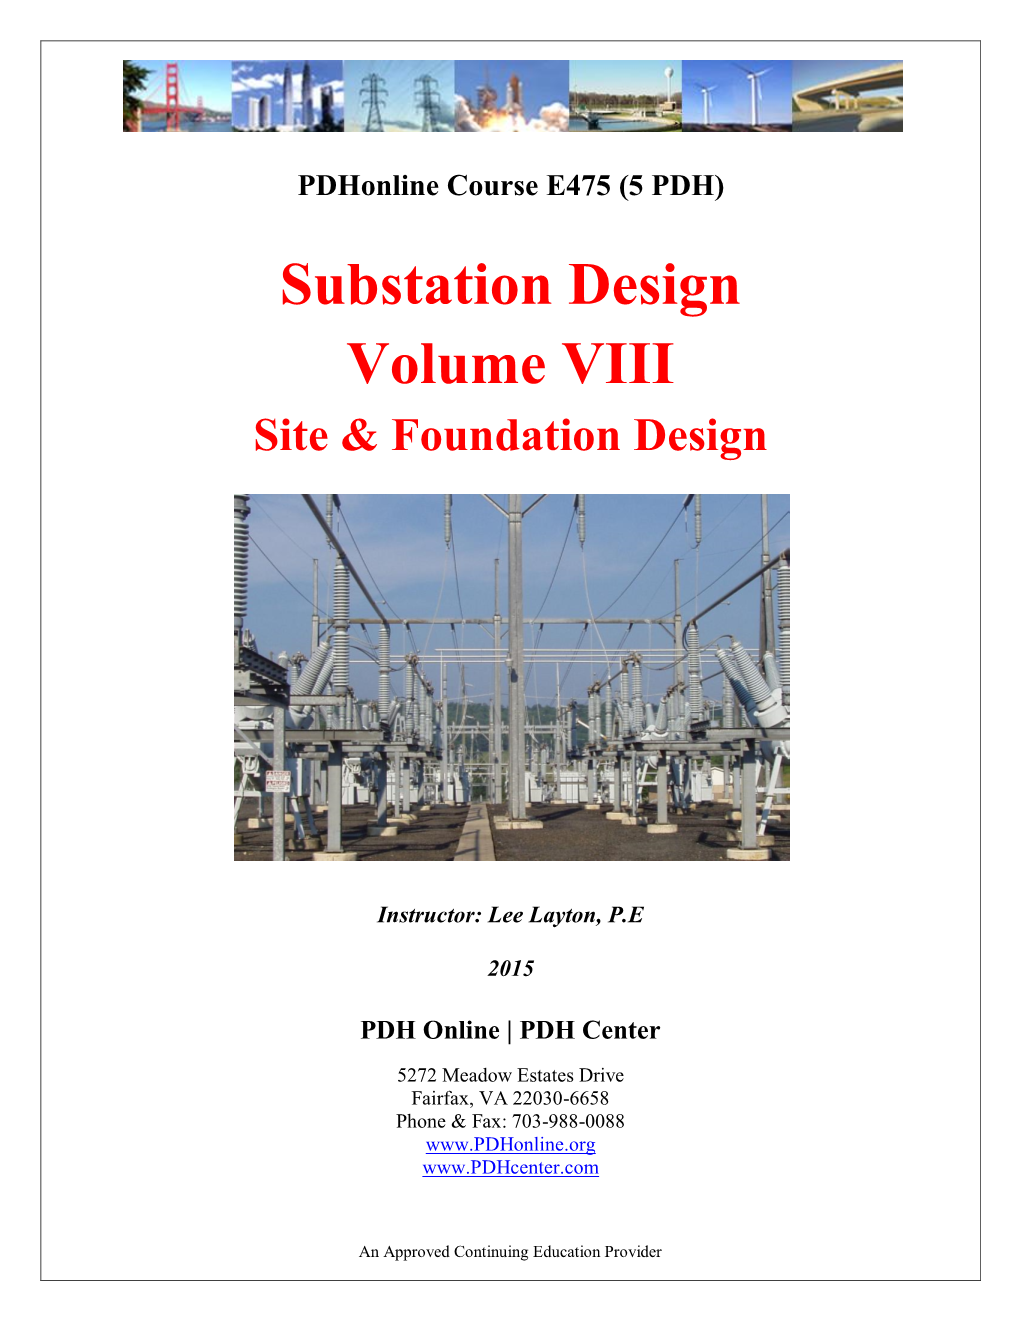 Substation Design Volume VIII Site & Foundation Design